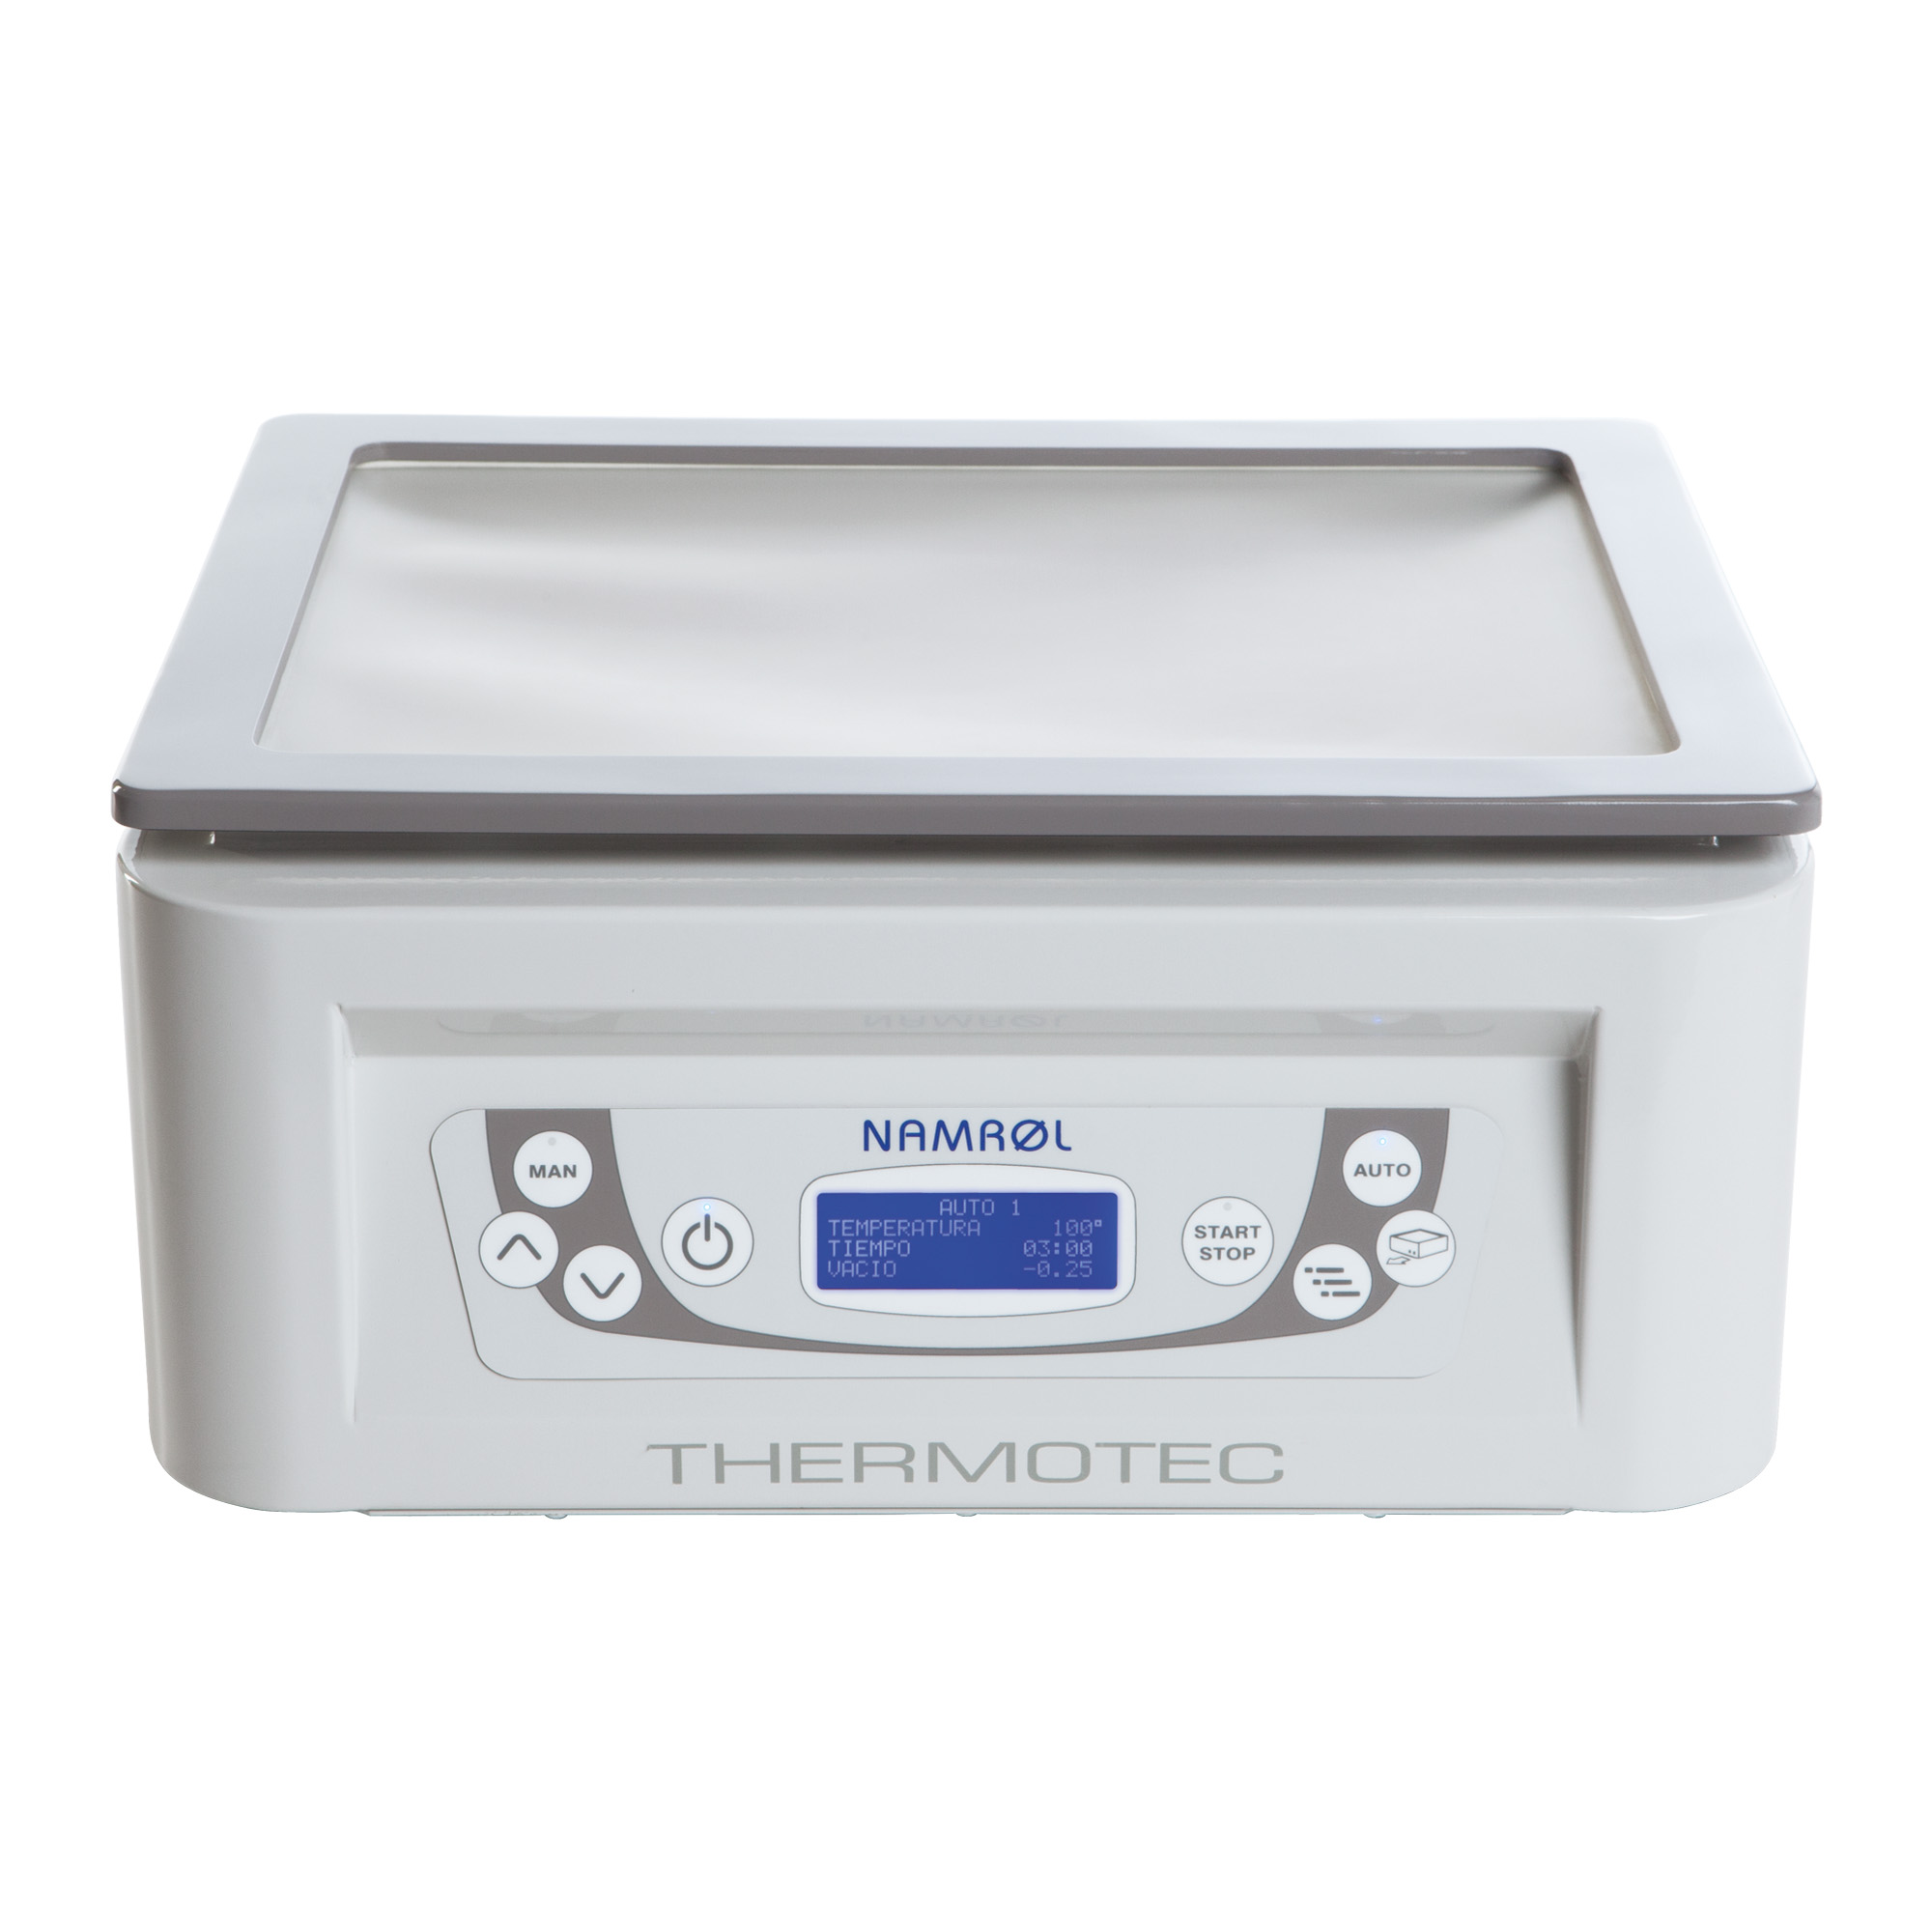 Thermotec - Plateforme de thermoformage digitale avec pédale et